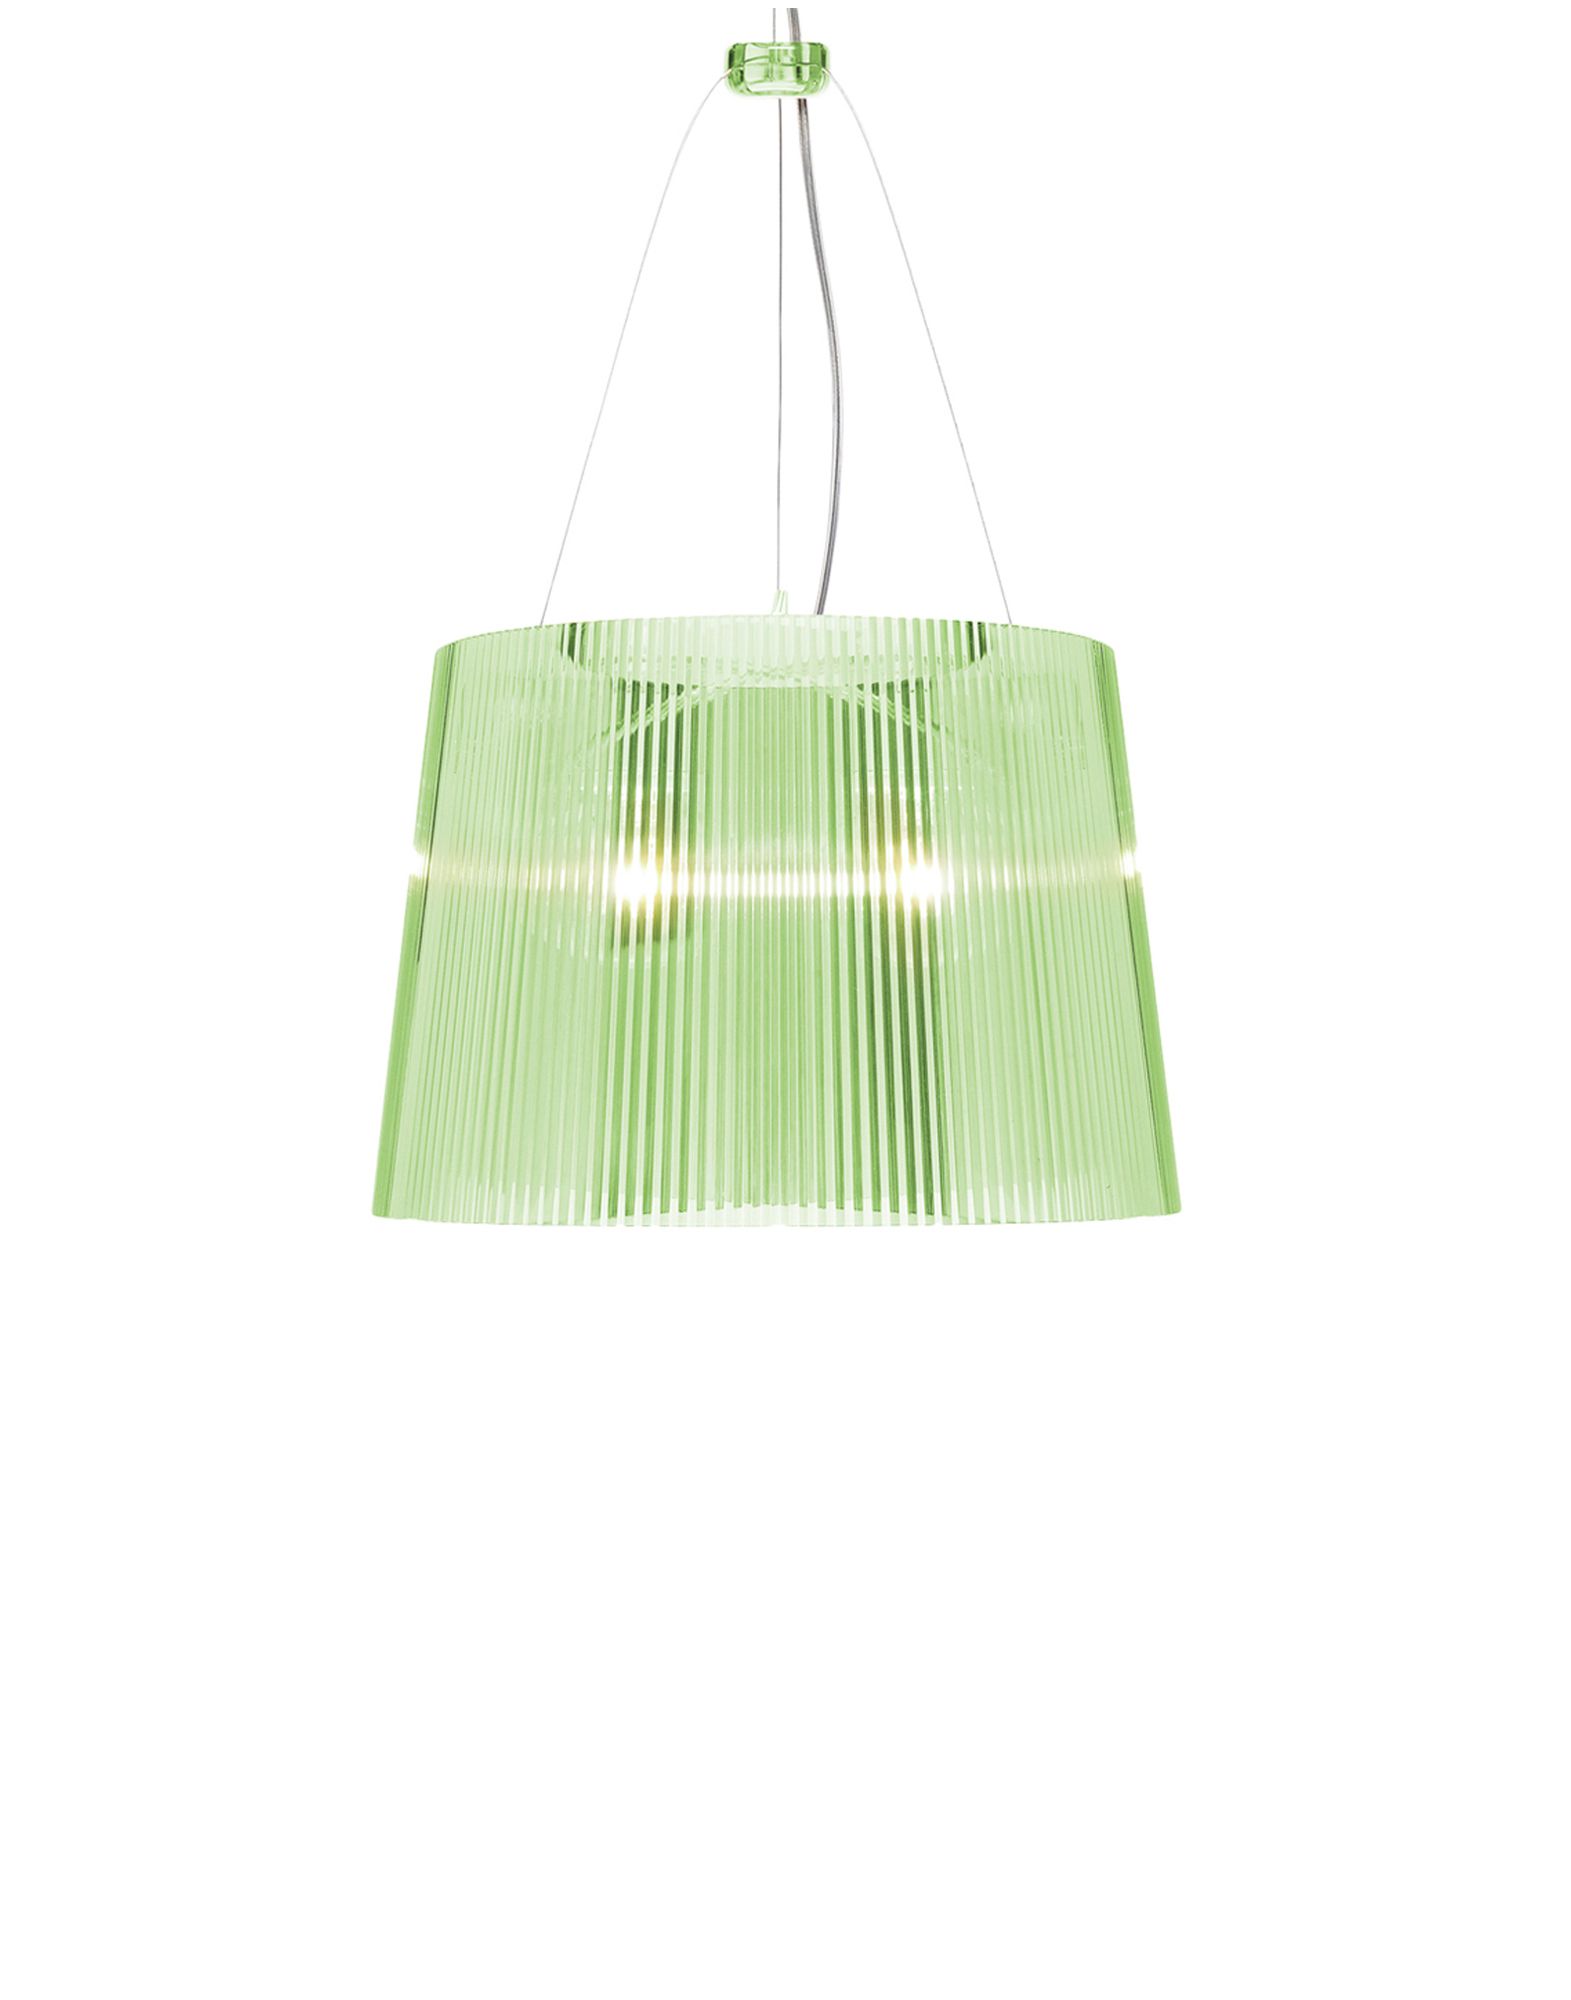 Suspensie Kartell Ge’ design Ferruccio Laviani E27 max 70W h37cm verde transparent Kartell